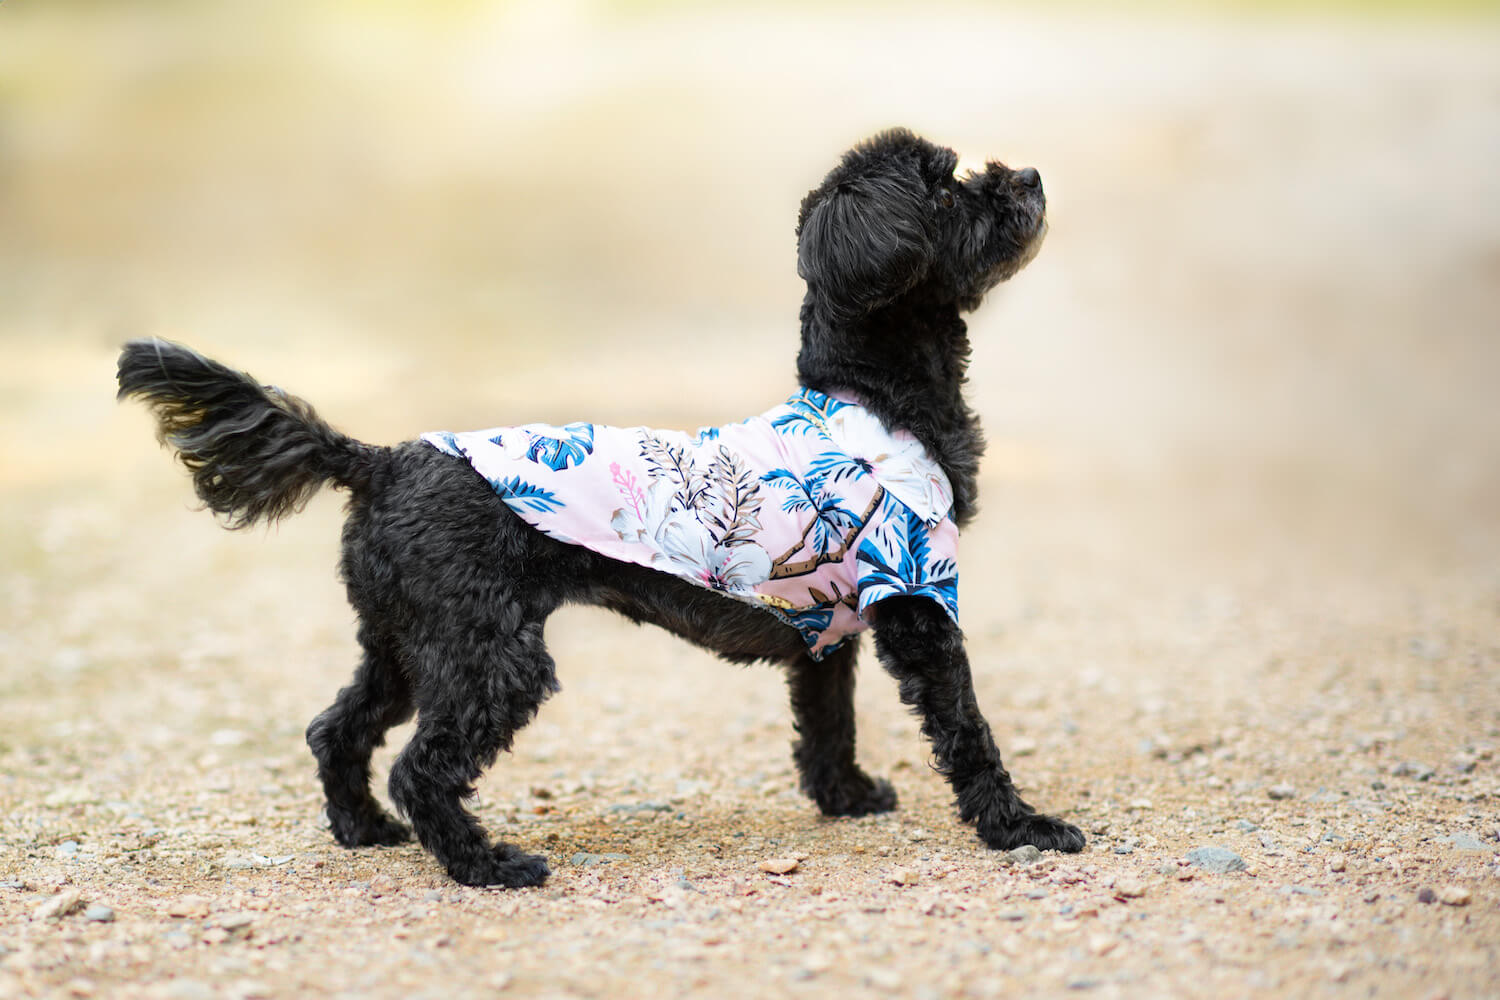 Vsepropejska Zyra plážová košile pro psa Barva: Růžová, Délka zad (cm): 35, Obvod hrudníku: 42 - 44 cm